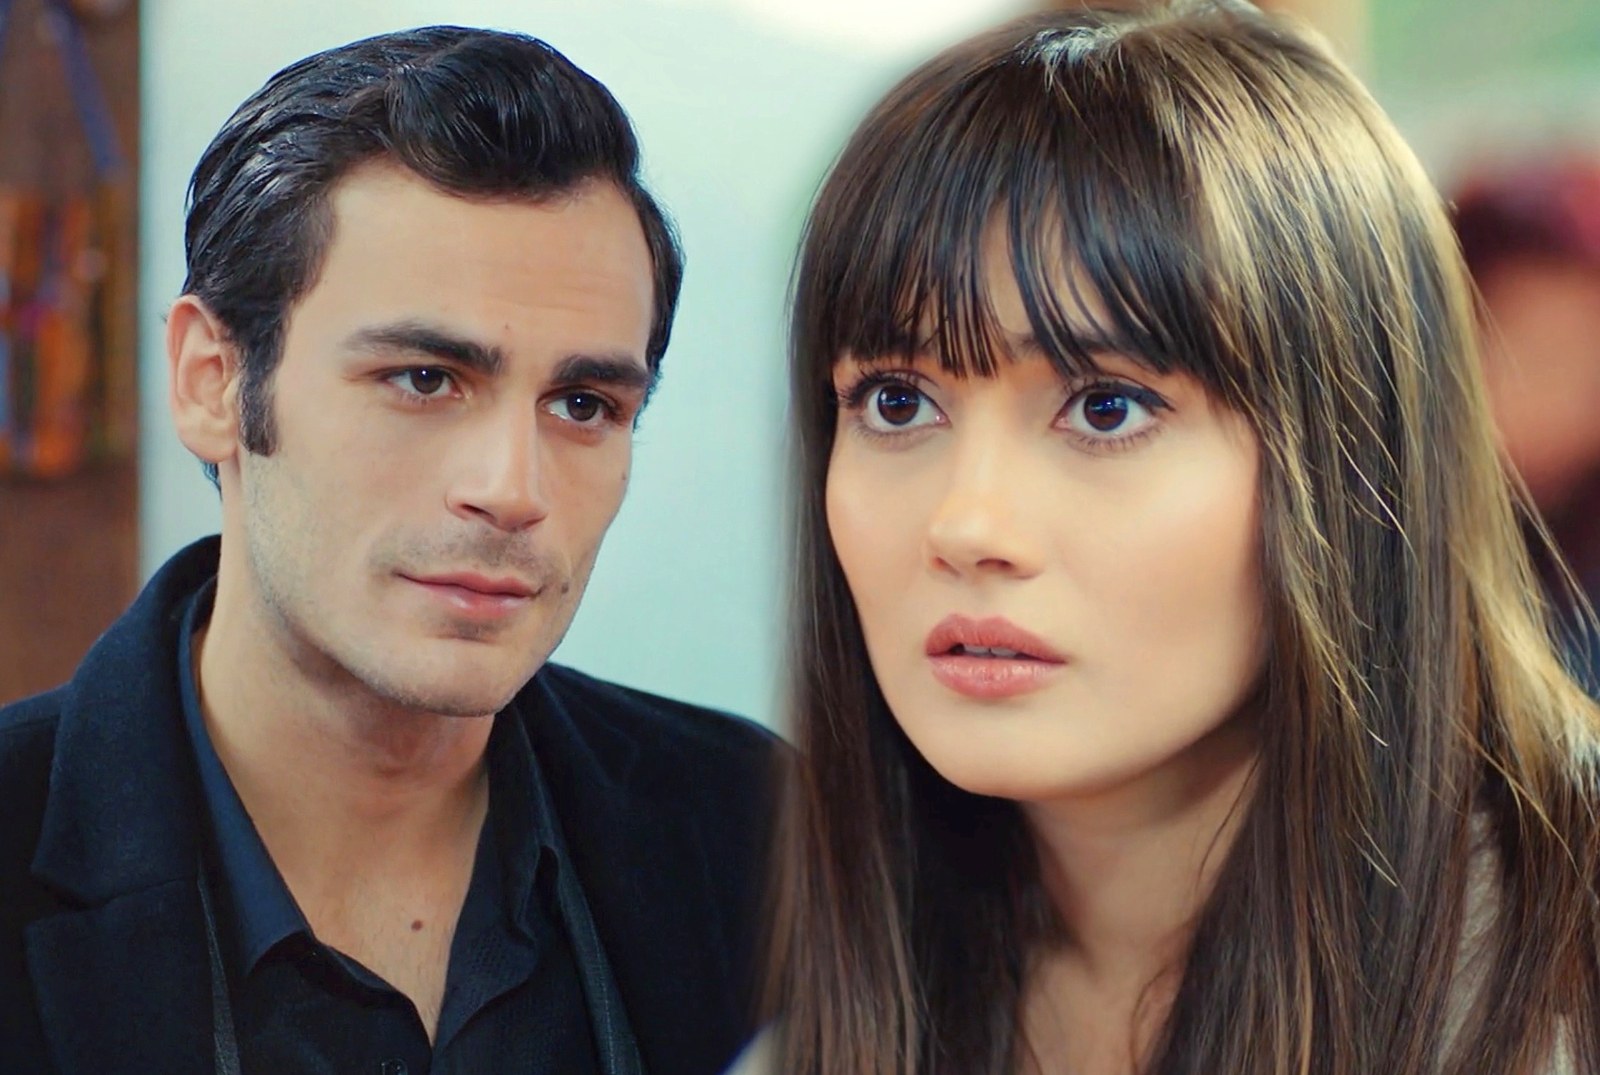 Dündar y Zeynep se convierten en falsos novios para dar celos a Alihan, en Pecado original